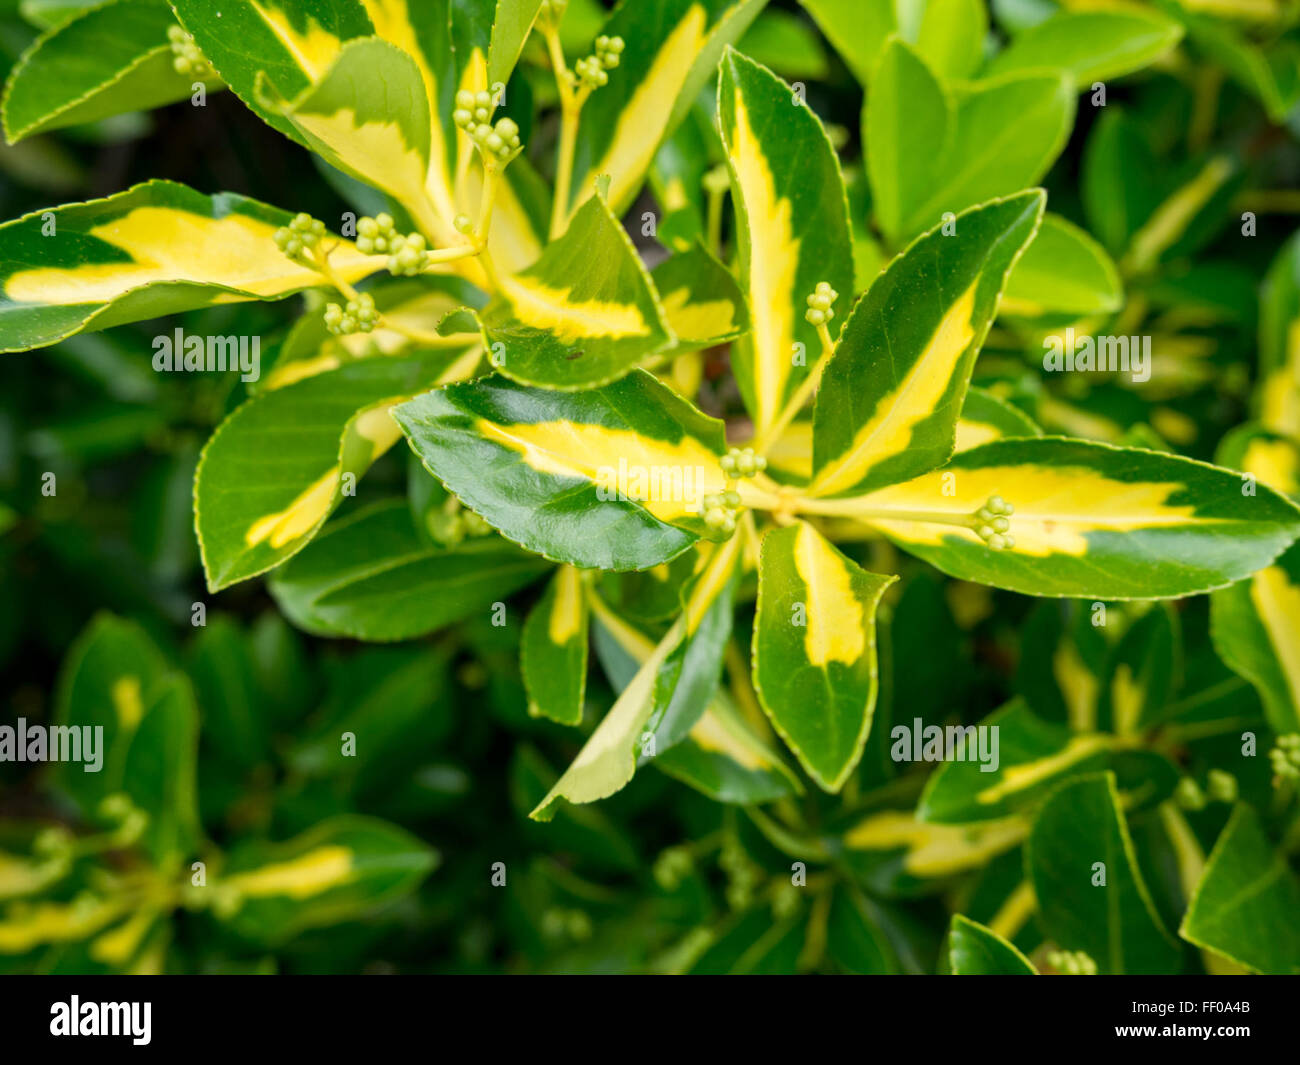 Les feuilles des plantes jaune et vert jaune et vert de feuilles de plantes Banque D'Images